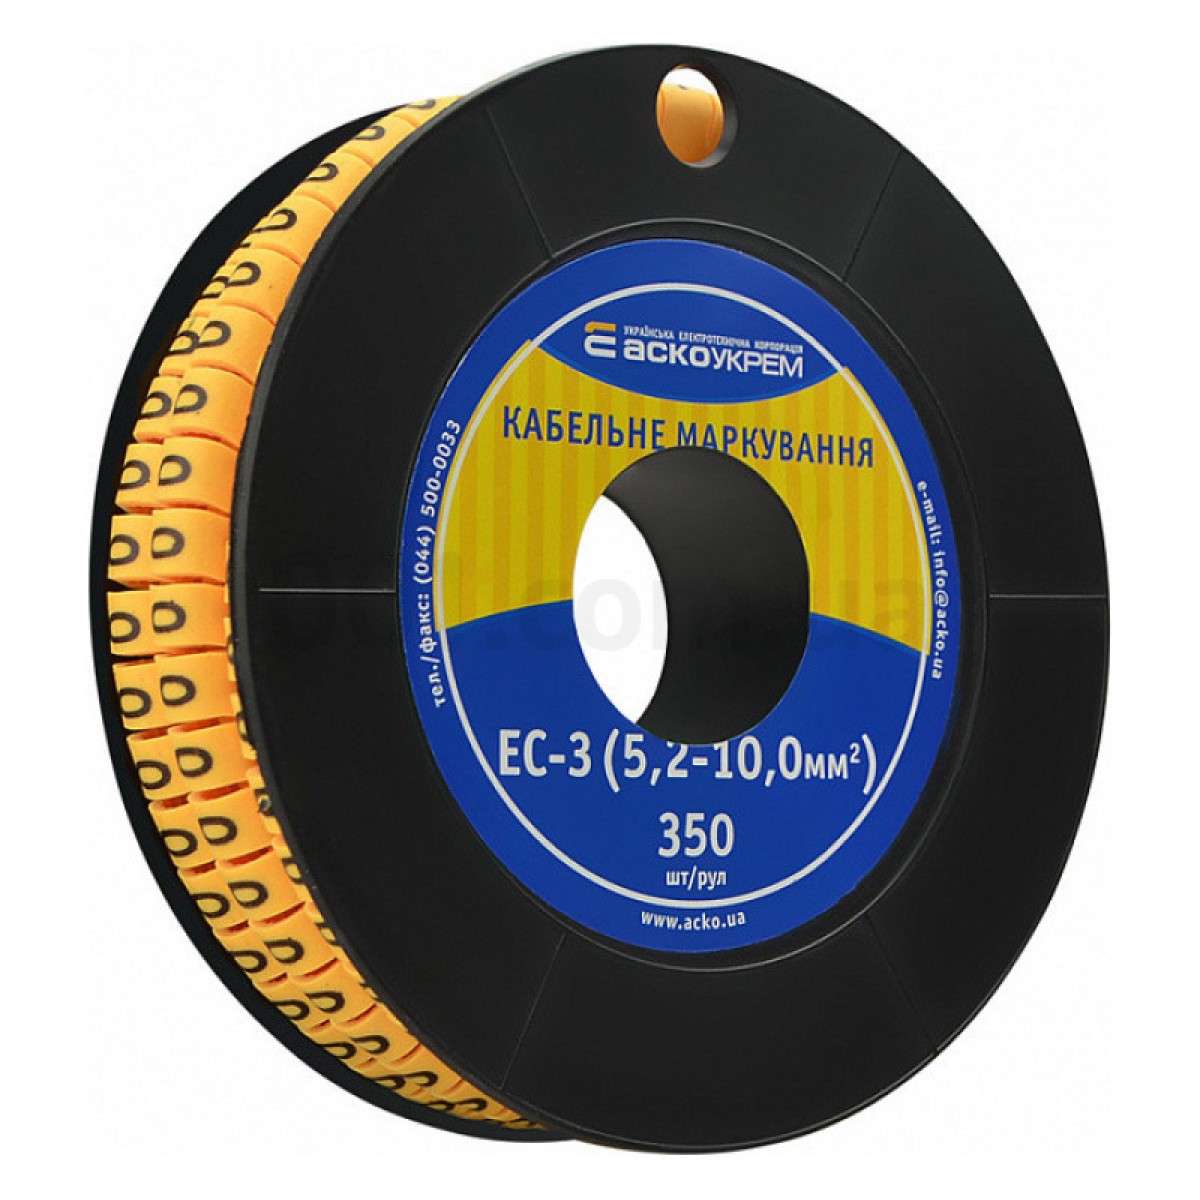 Маркировка EC-3 для кабеля 5,2-10,0 мм² символ «0» (рулон 250 шт.), АСКО-УКРЕМ 256_256.jpg